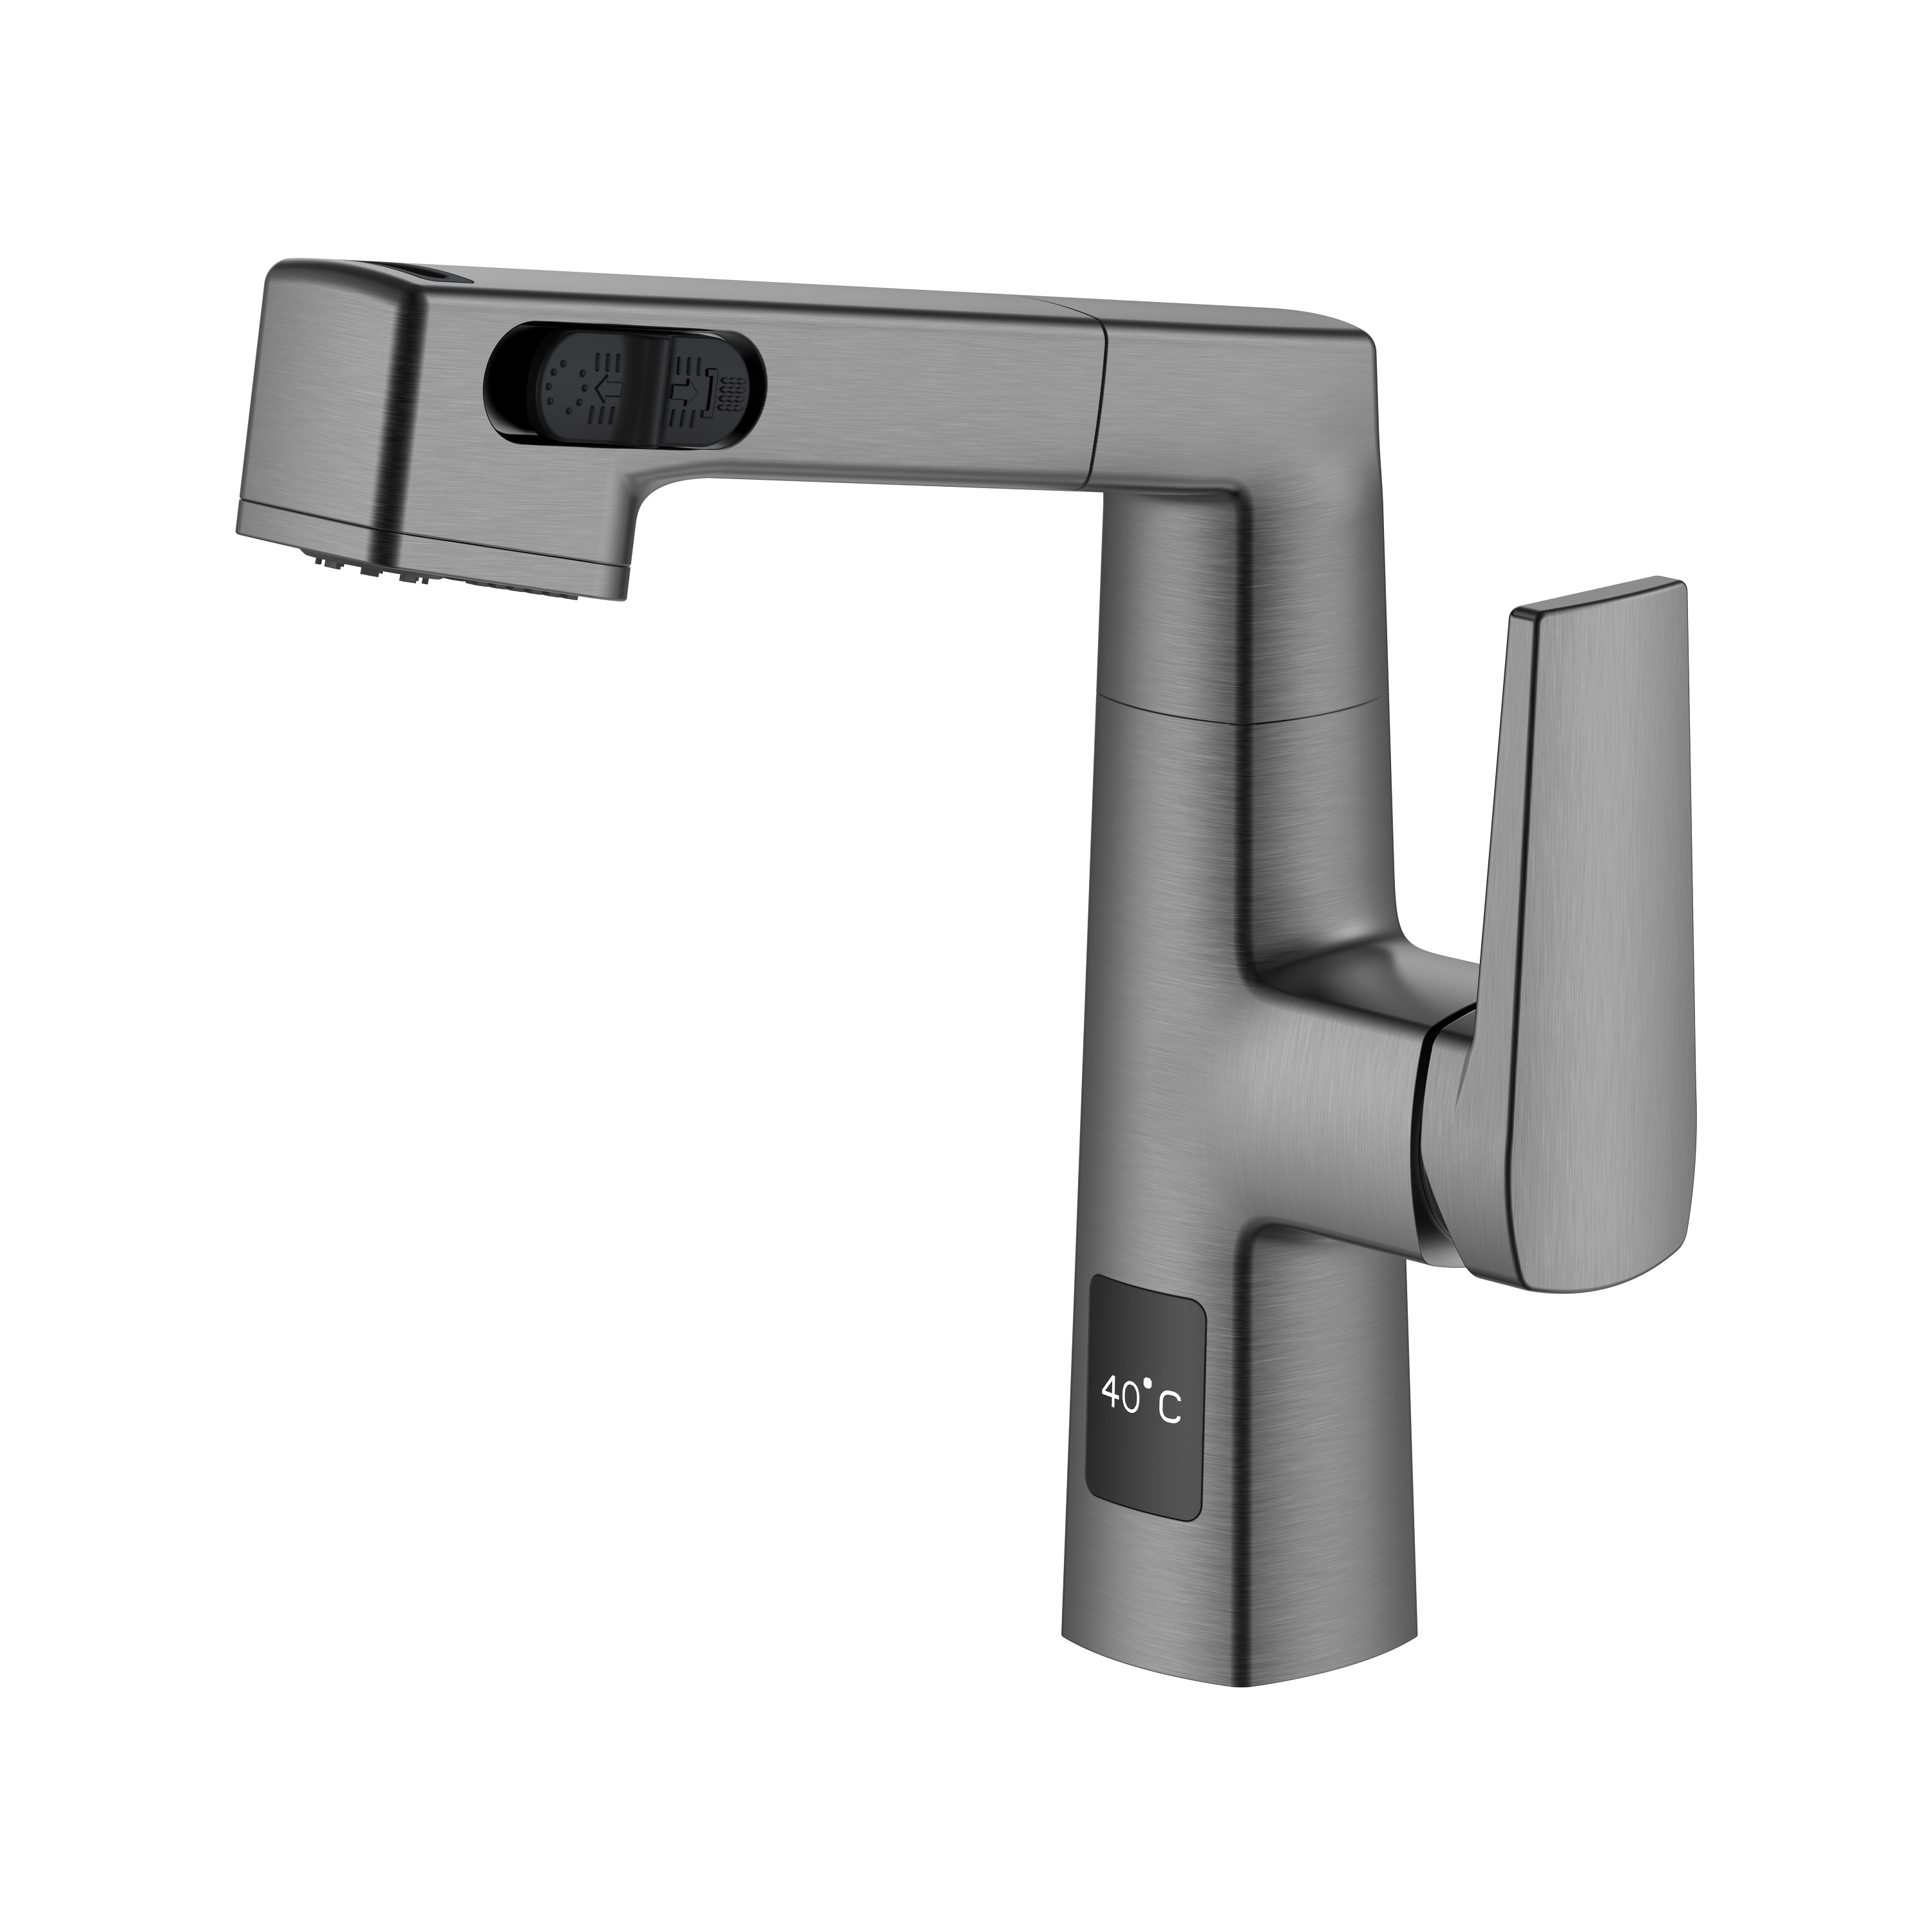 Design mais recente com visor de temperatura ajustável altura preta torneira do banheiro removível